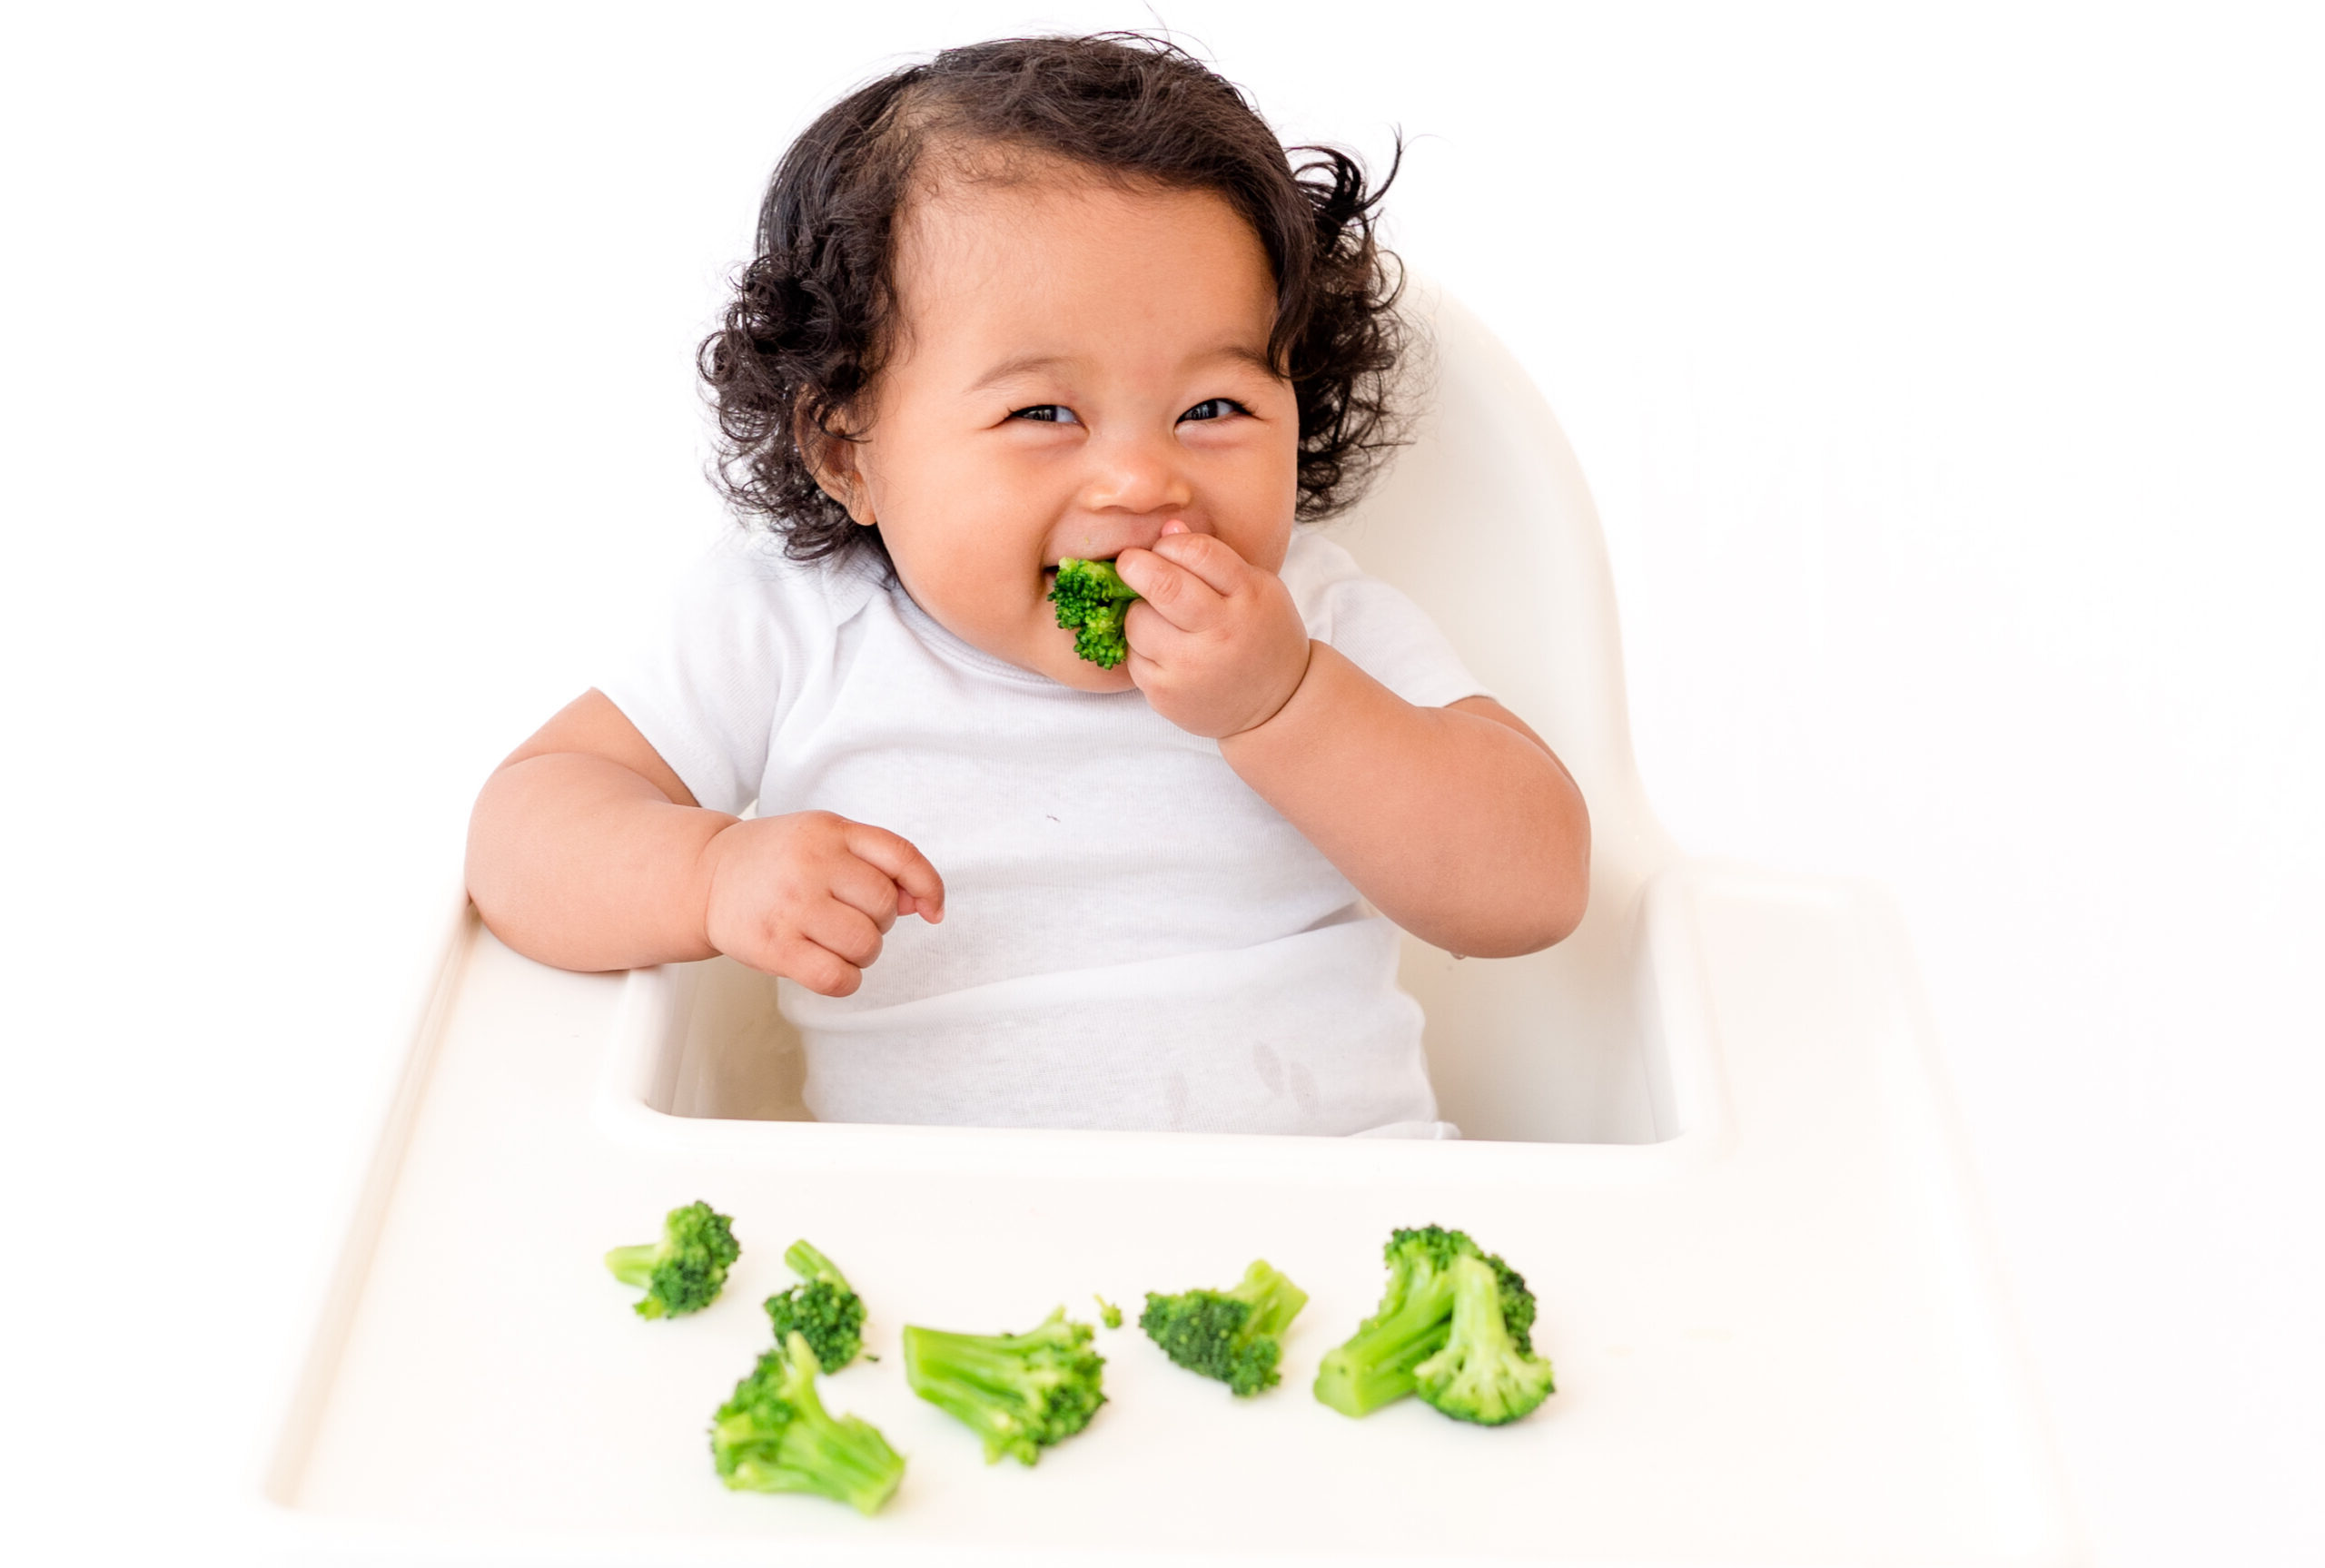 Babies and Broccoli